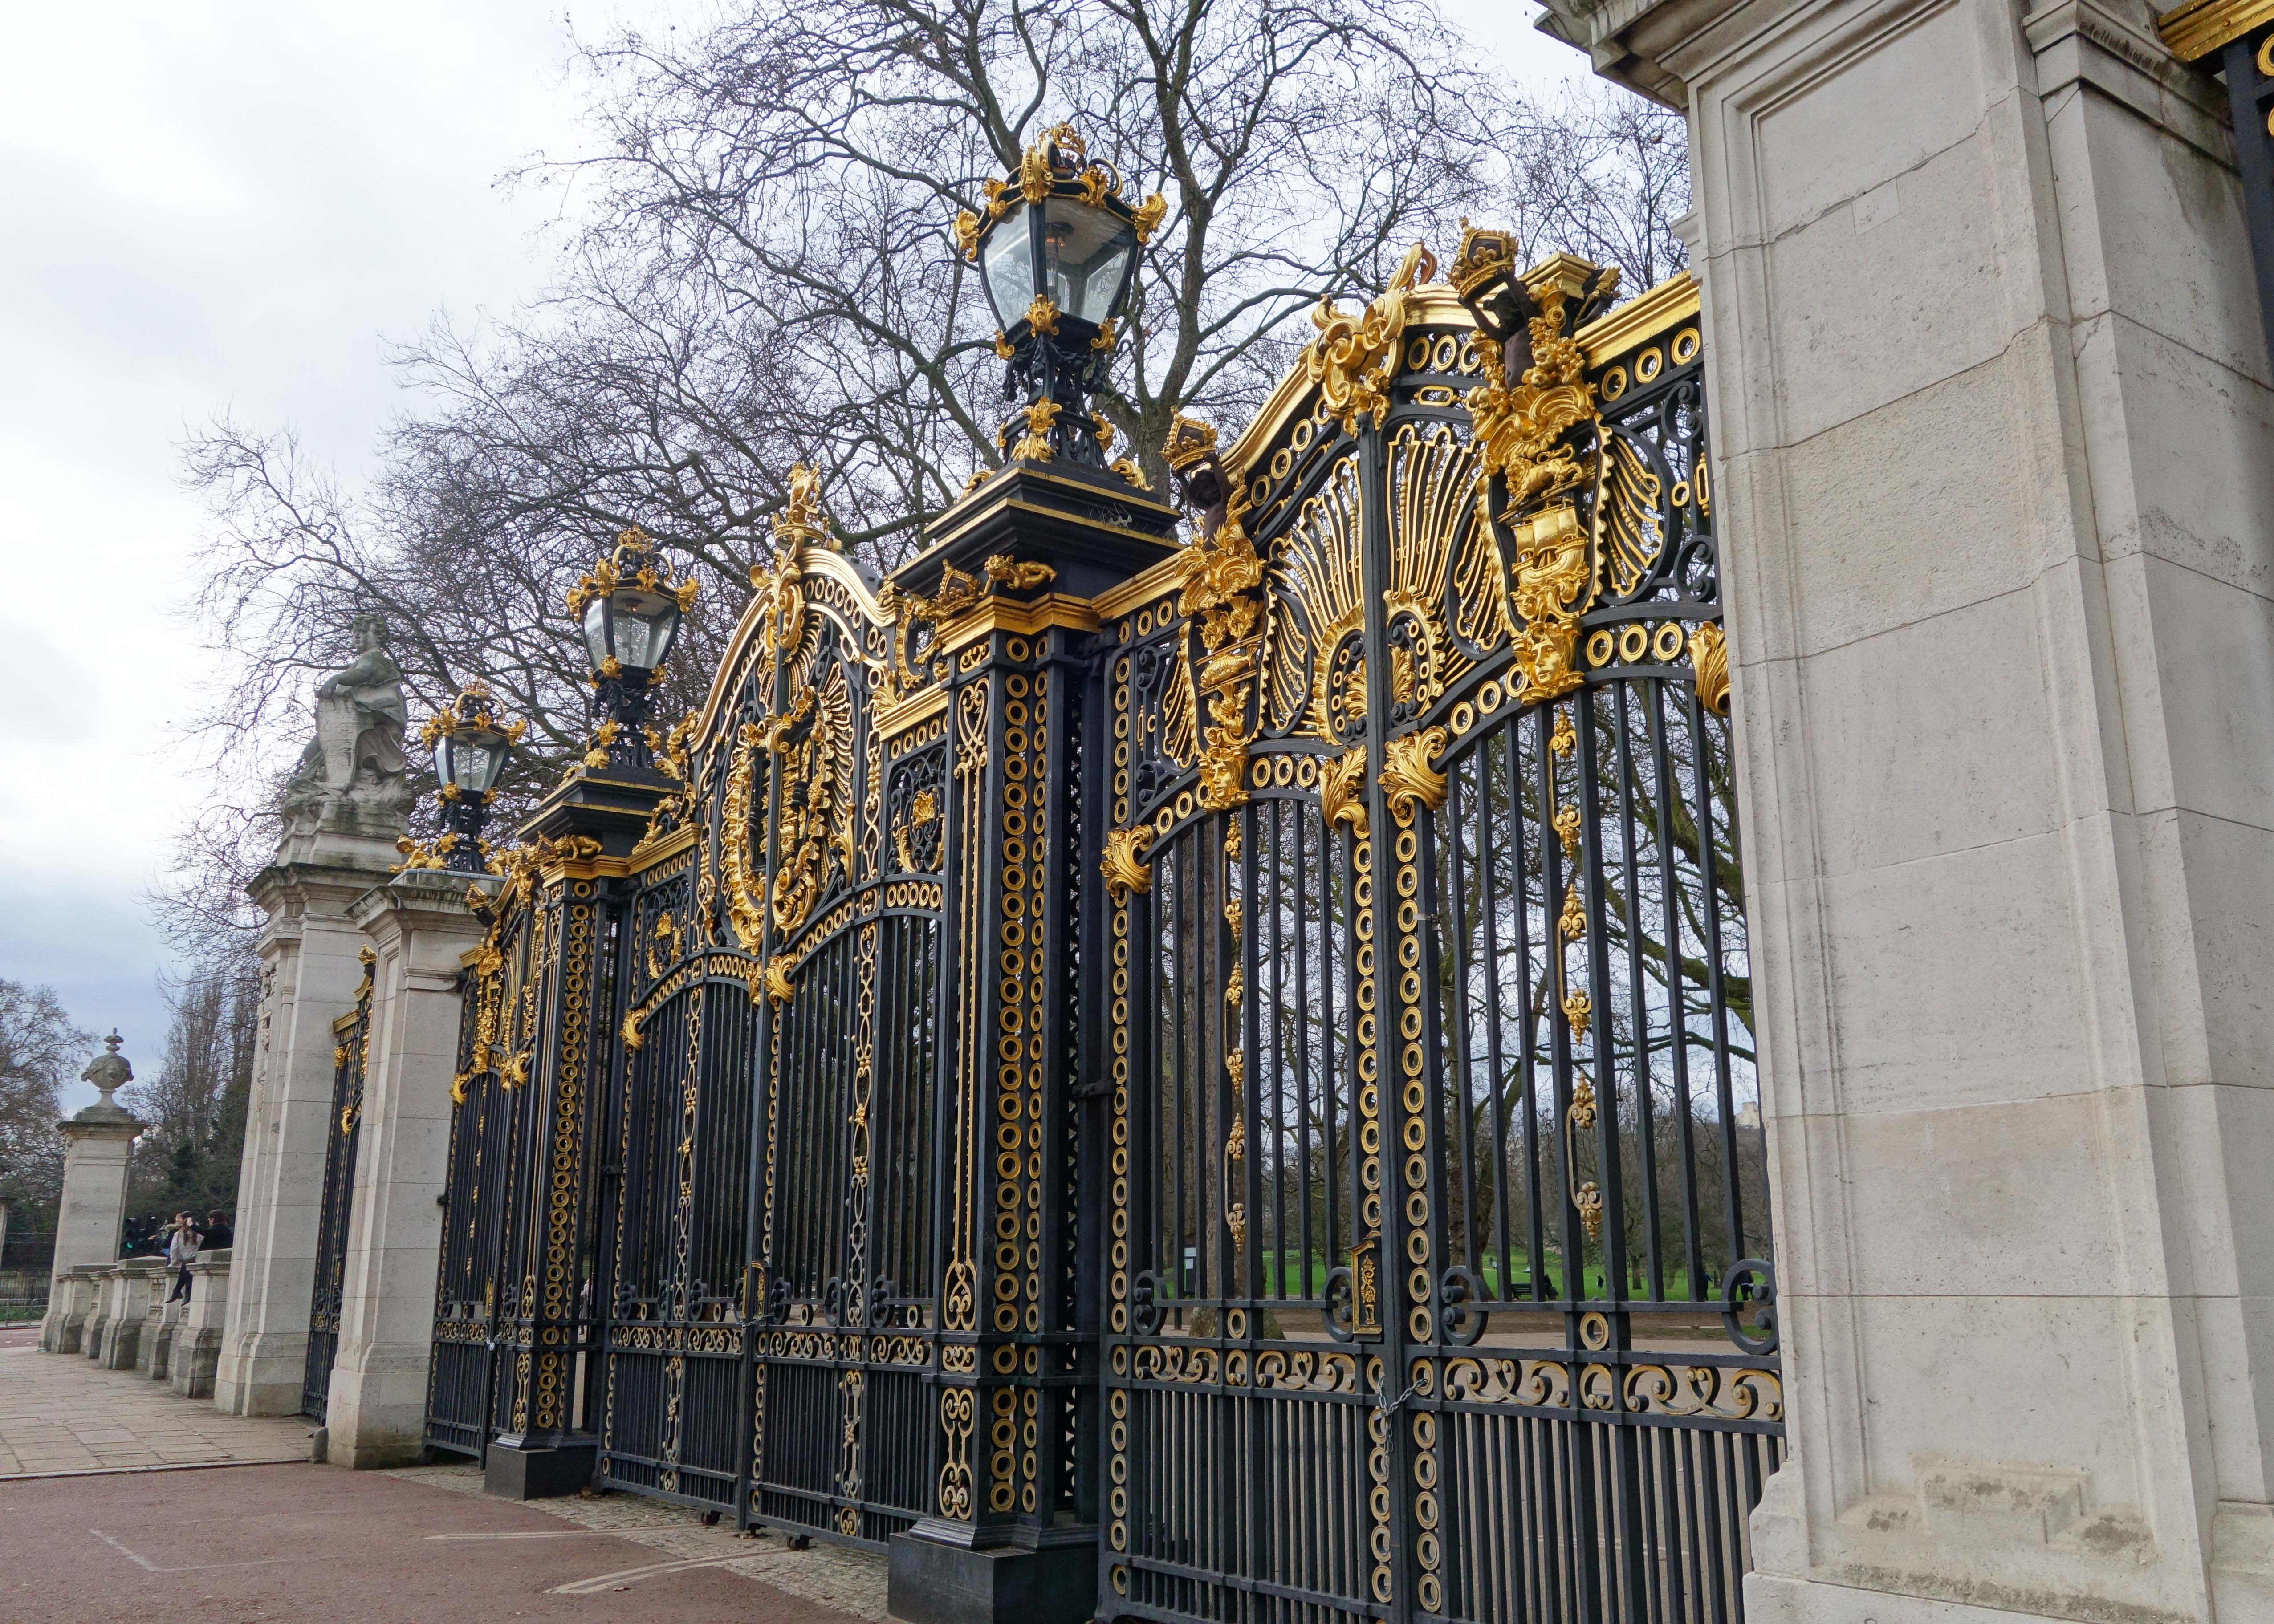 Buckingham Palace Gates, London, England